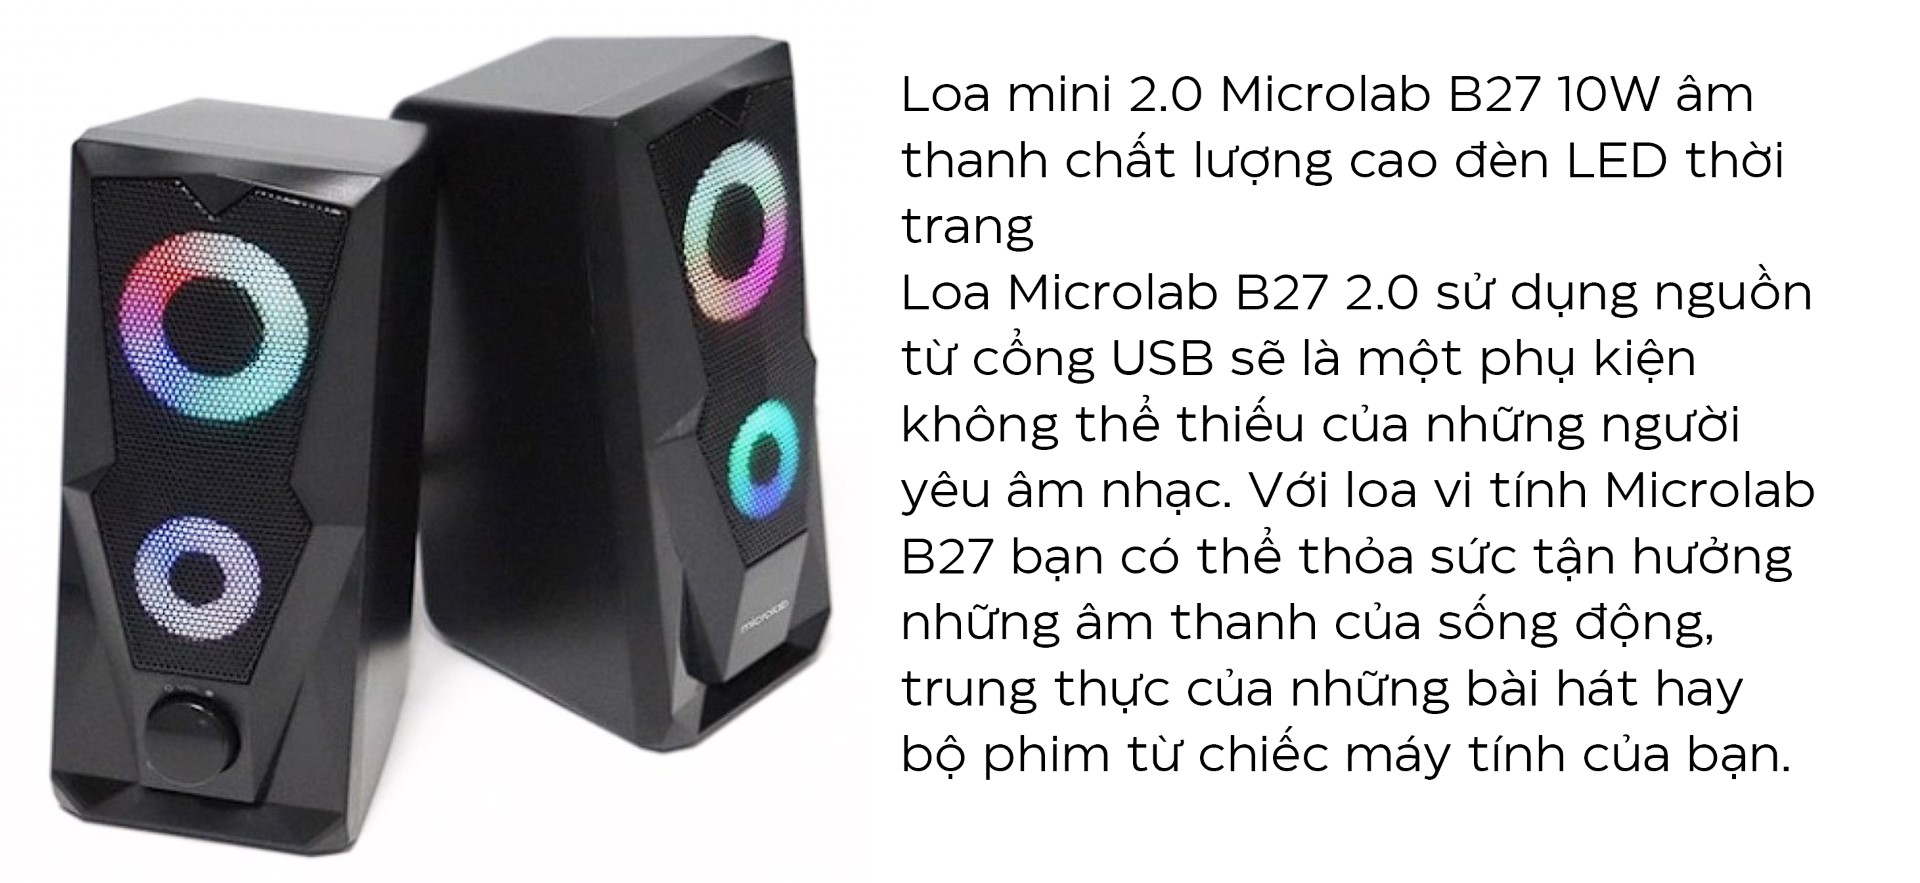 Loa Microlab B27 2.0